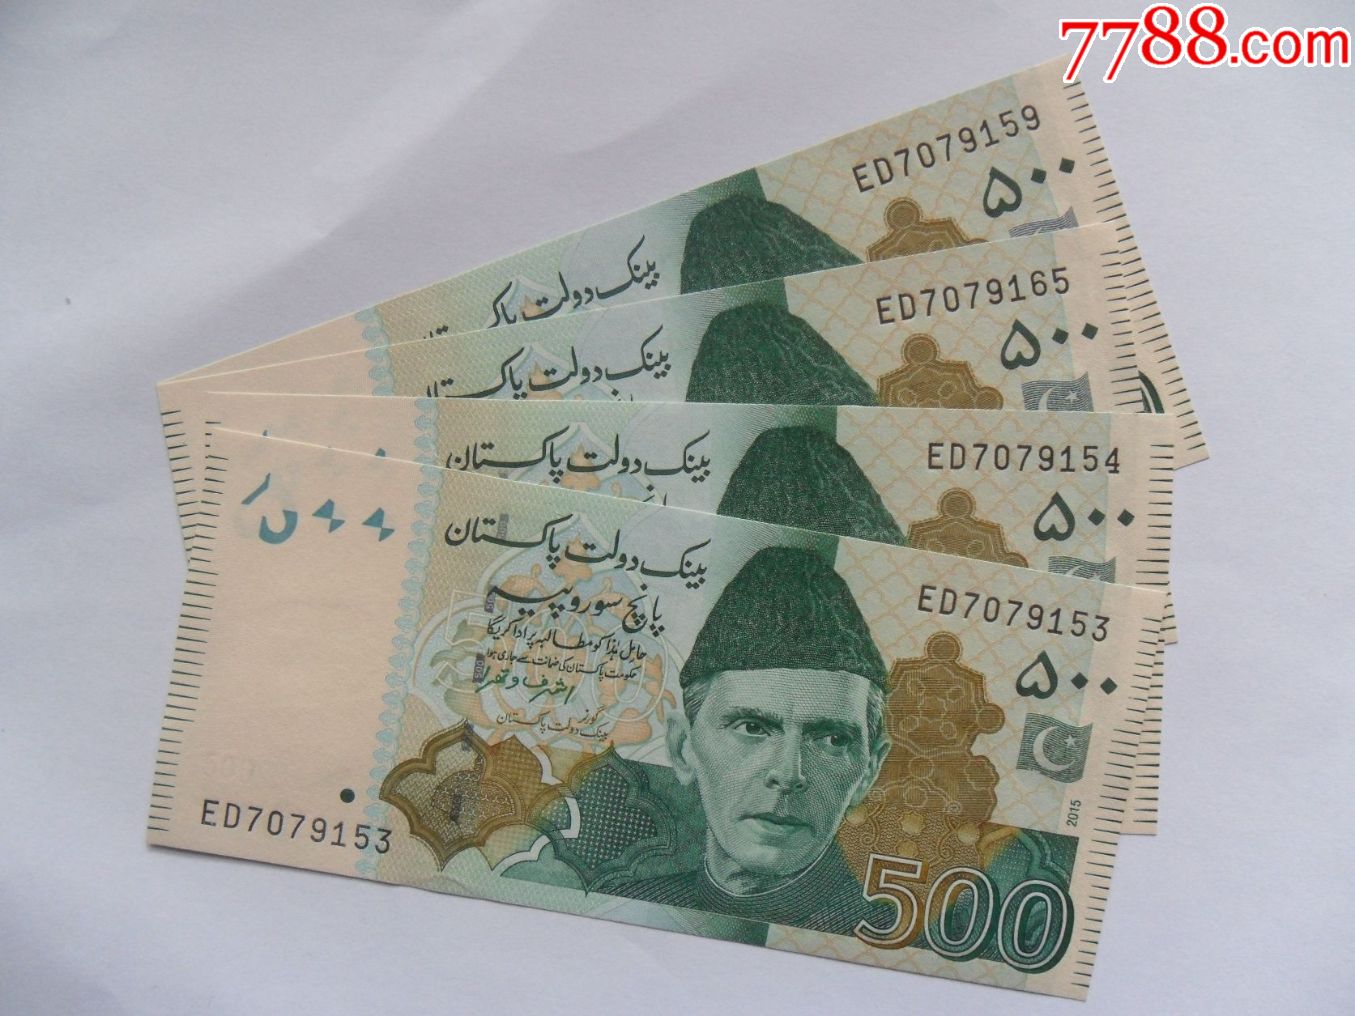 巴勒斯坦货币图片